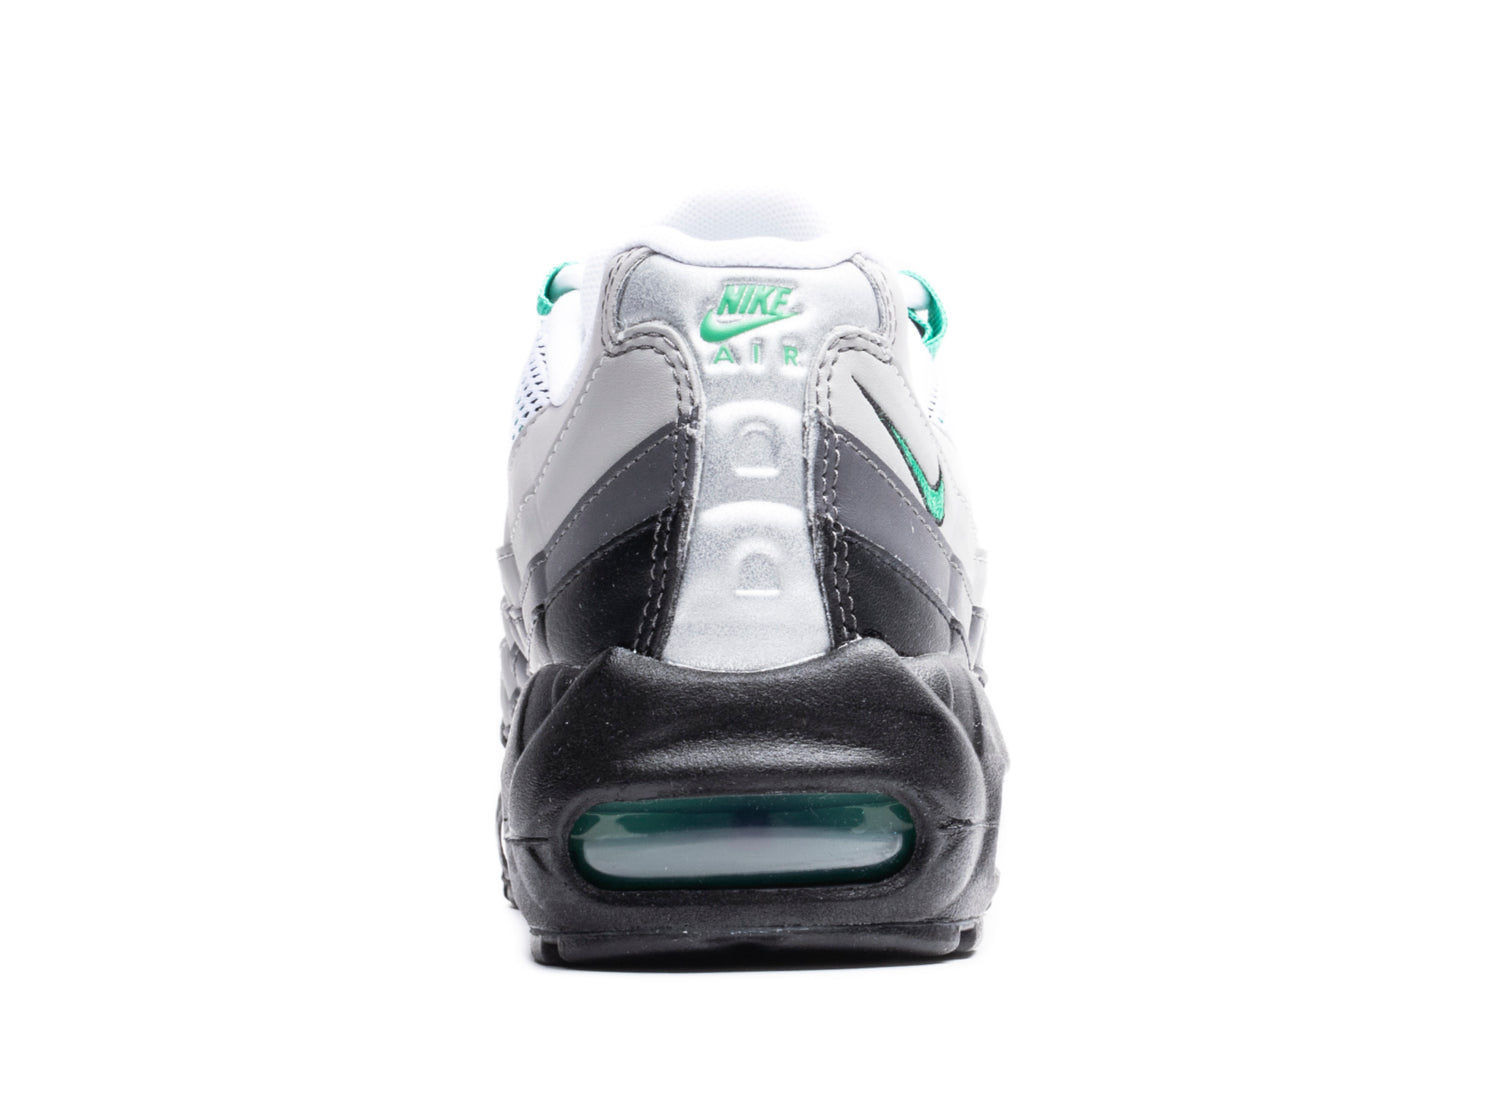 Nike Air Max 95 Black / Stadium Green / Pearl Grey - DH8015-002